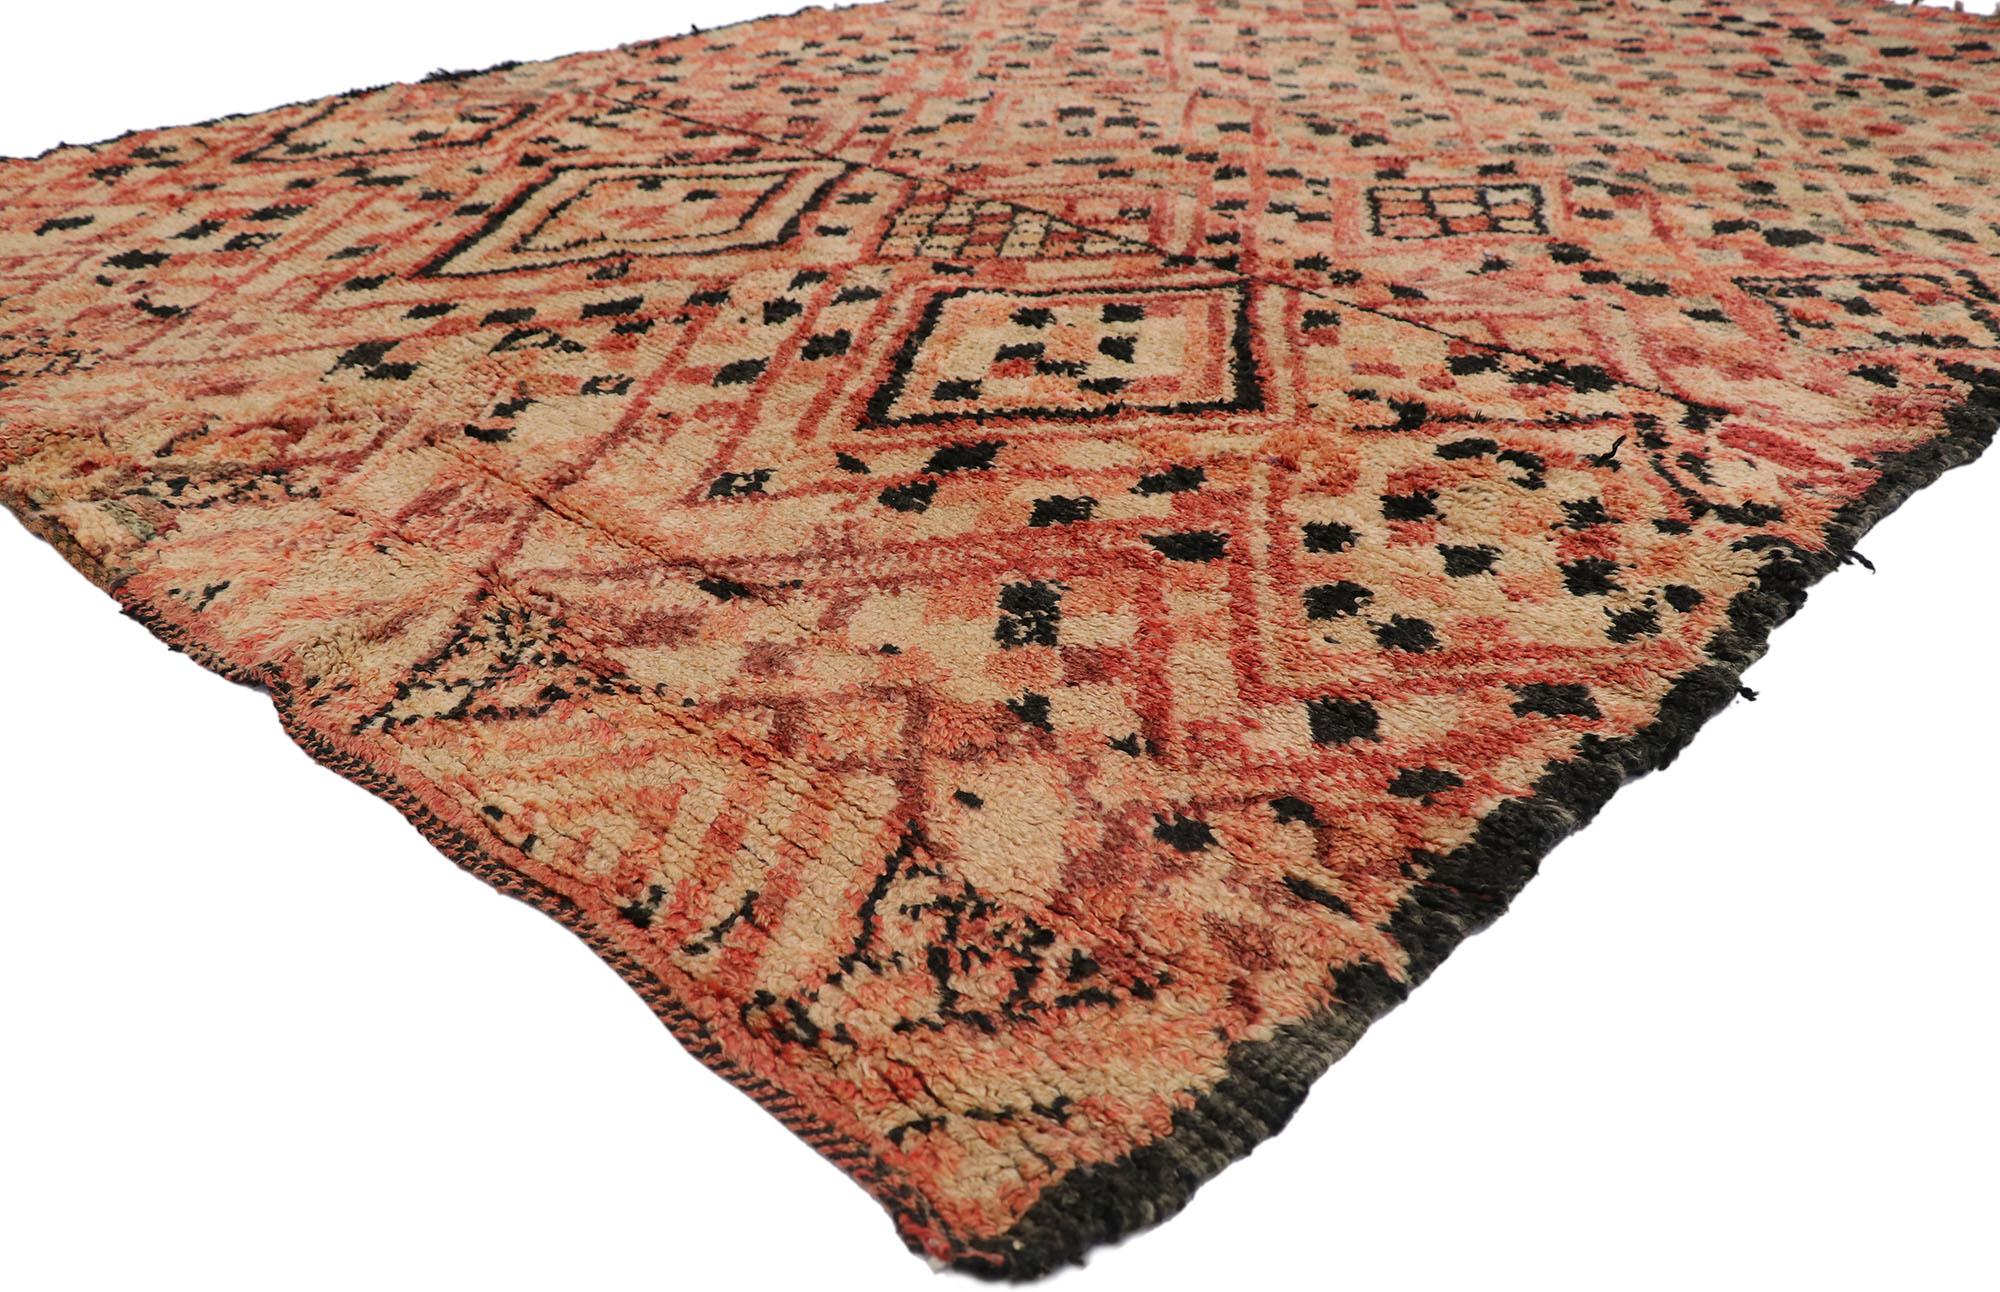 21265 Vintage Berber marokkanischen Boujad Teppich mit böhmischen Stil 06'08 x 10'05. Dieser handgeknüpfte marokkanische Boujad-Teppich aus alter Berberwolle ist warm und einladend, eine fesselnde Vision von gewebter Schönheit. Das auffällige